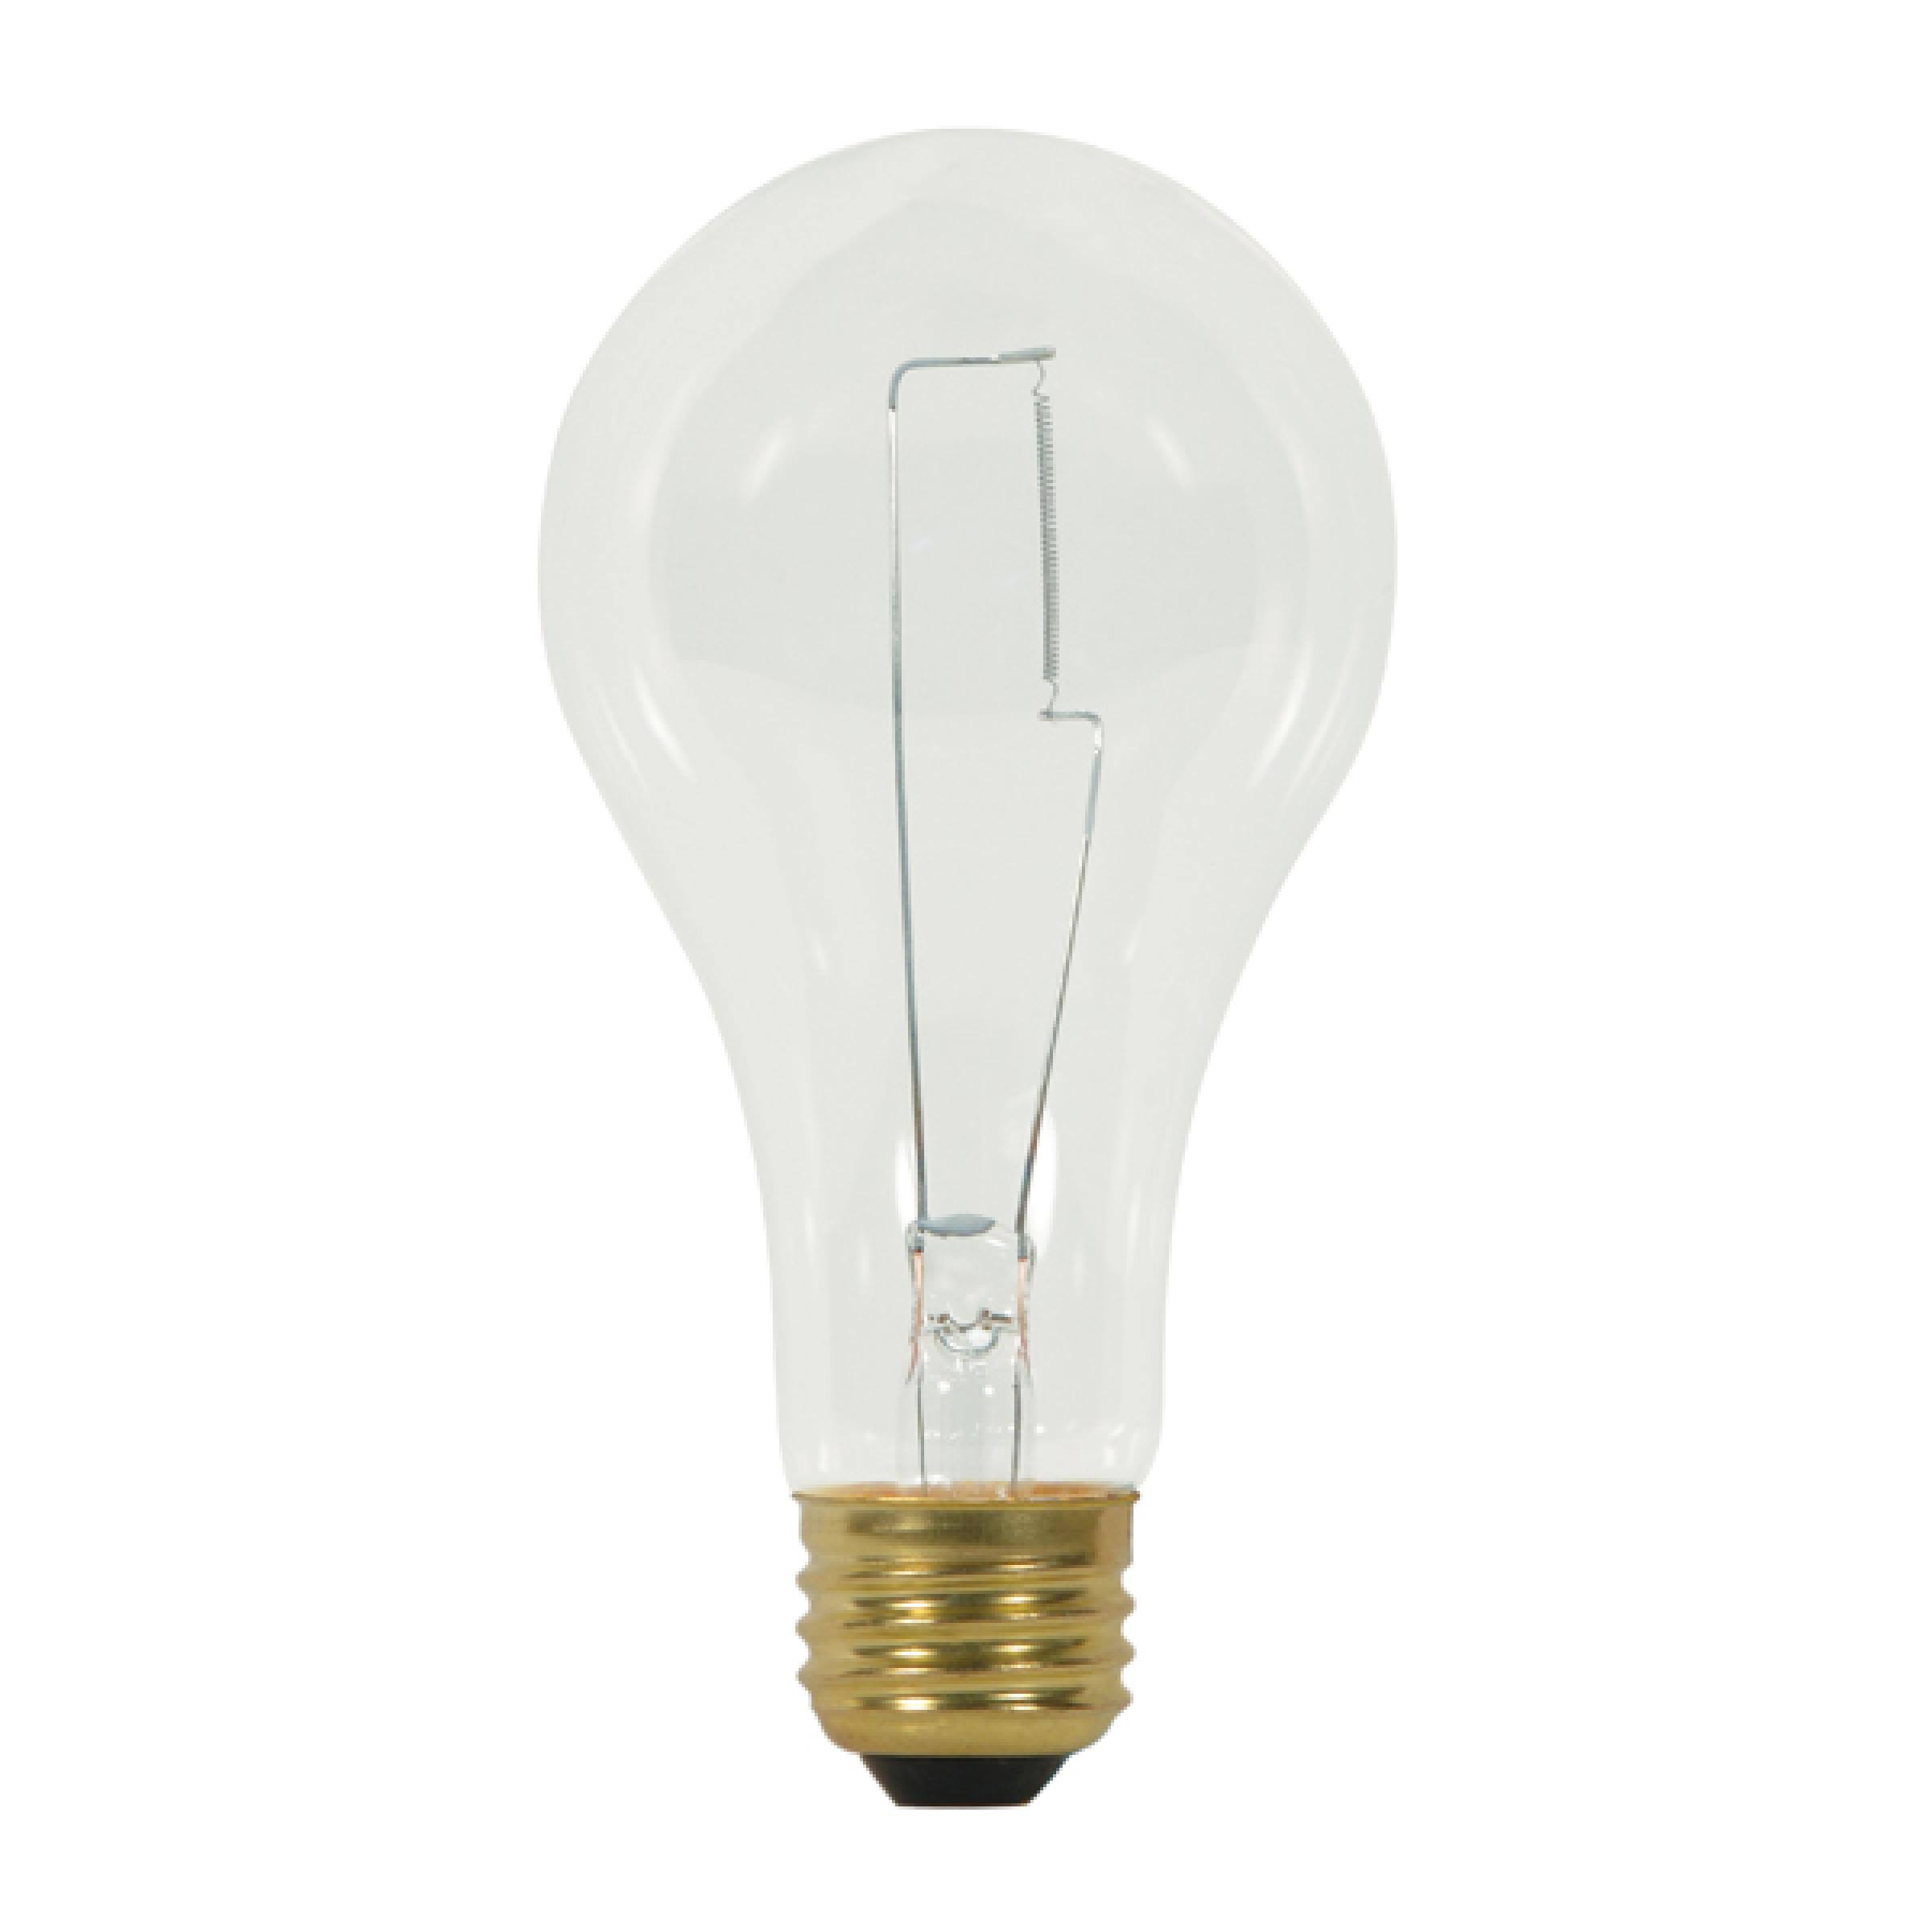 Satco Household Incandescent Light Bulb - 150W, 120V